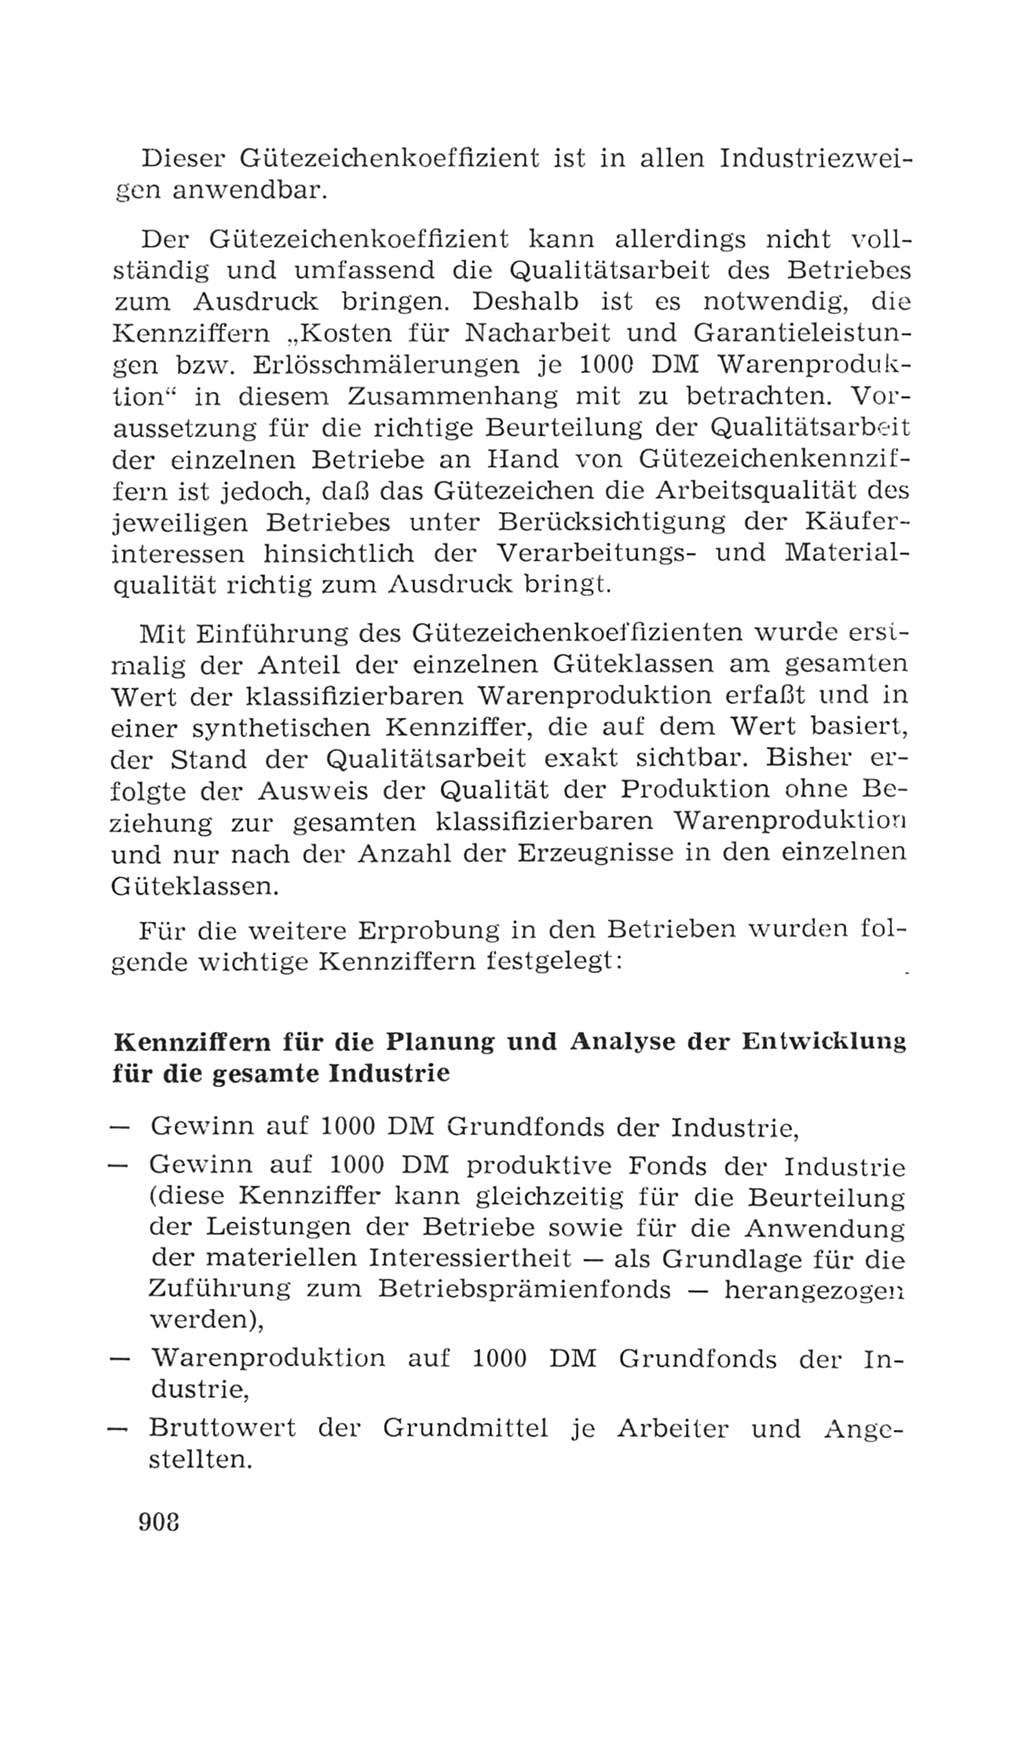 Volkskammer (VK) der Deutschen Demokratischen Republik (DDR), 4. Wahlperiode 1963-1967, Seite 908 (VK. DDR 4. WP. 1963-1967, S. 908)